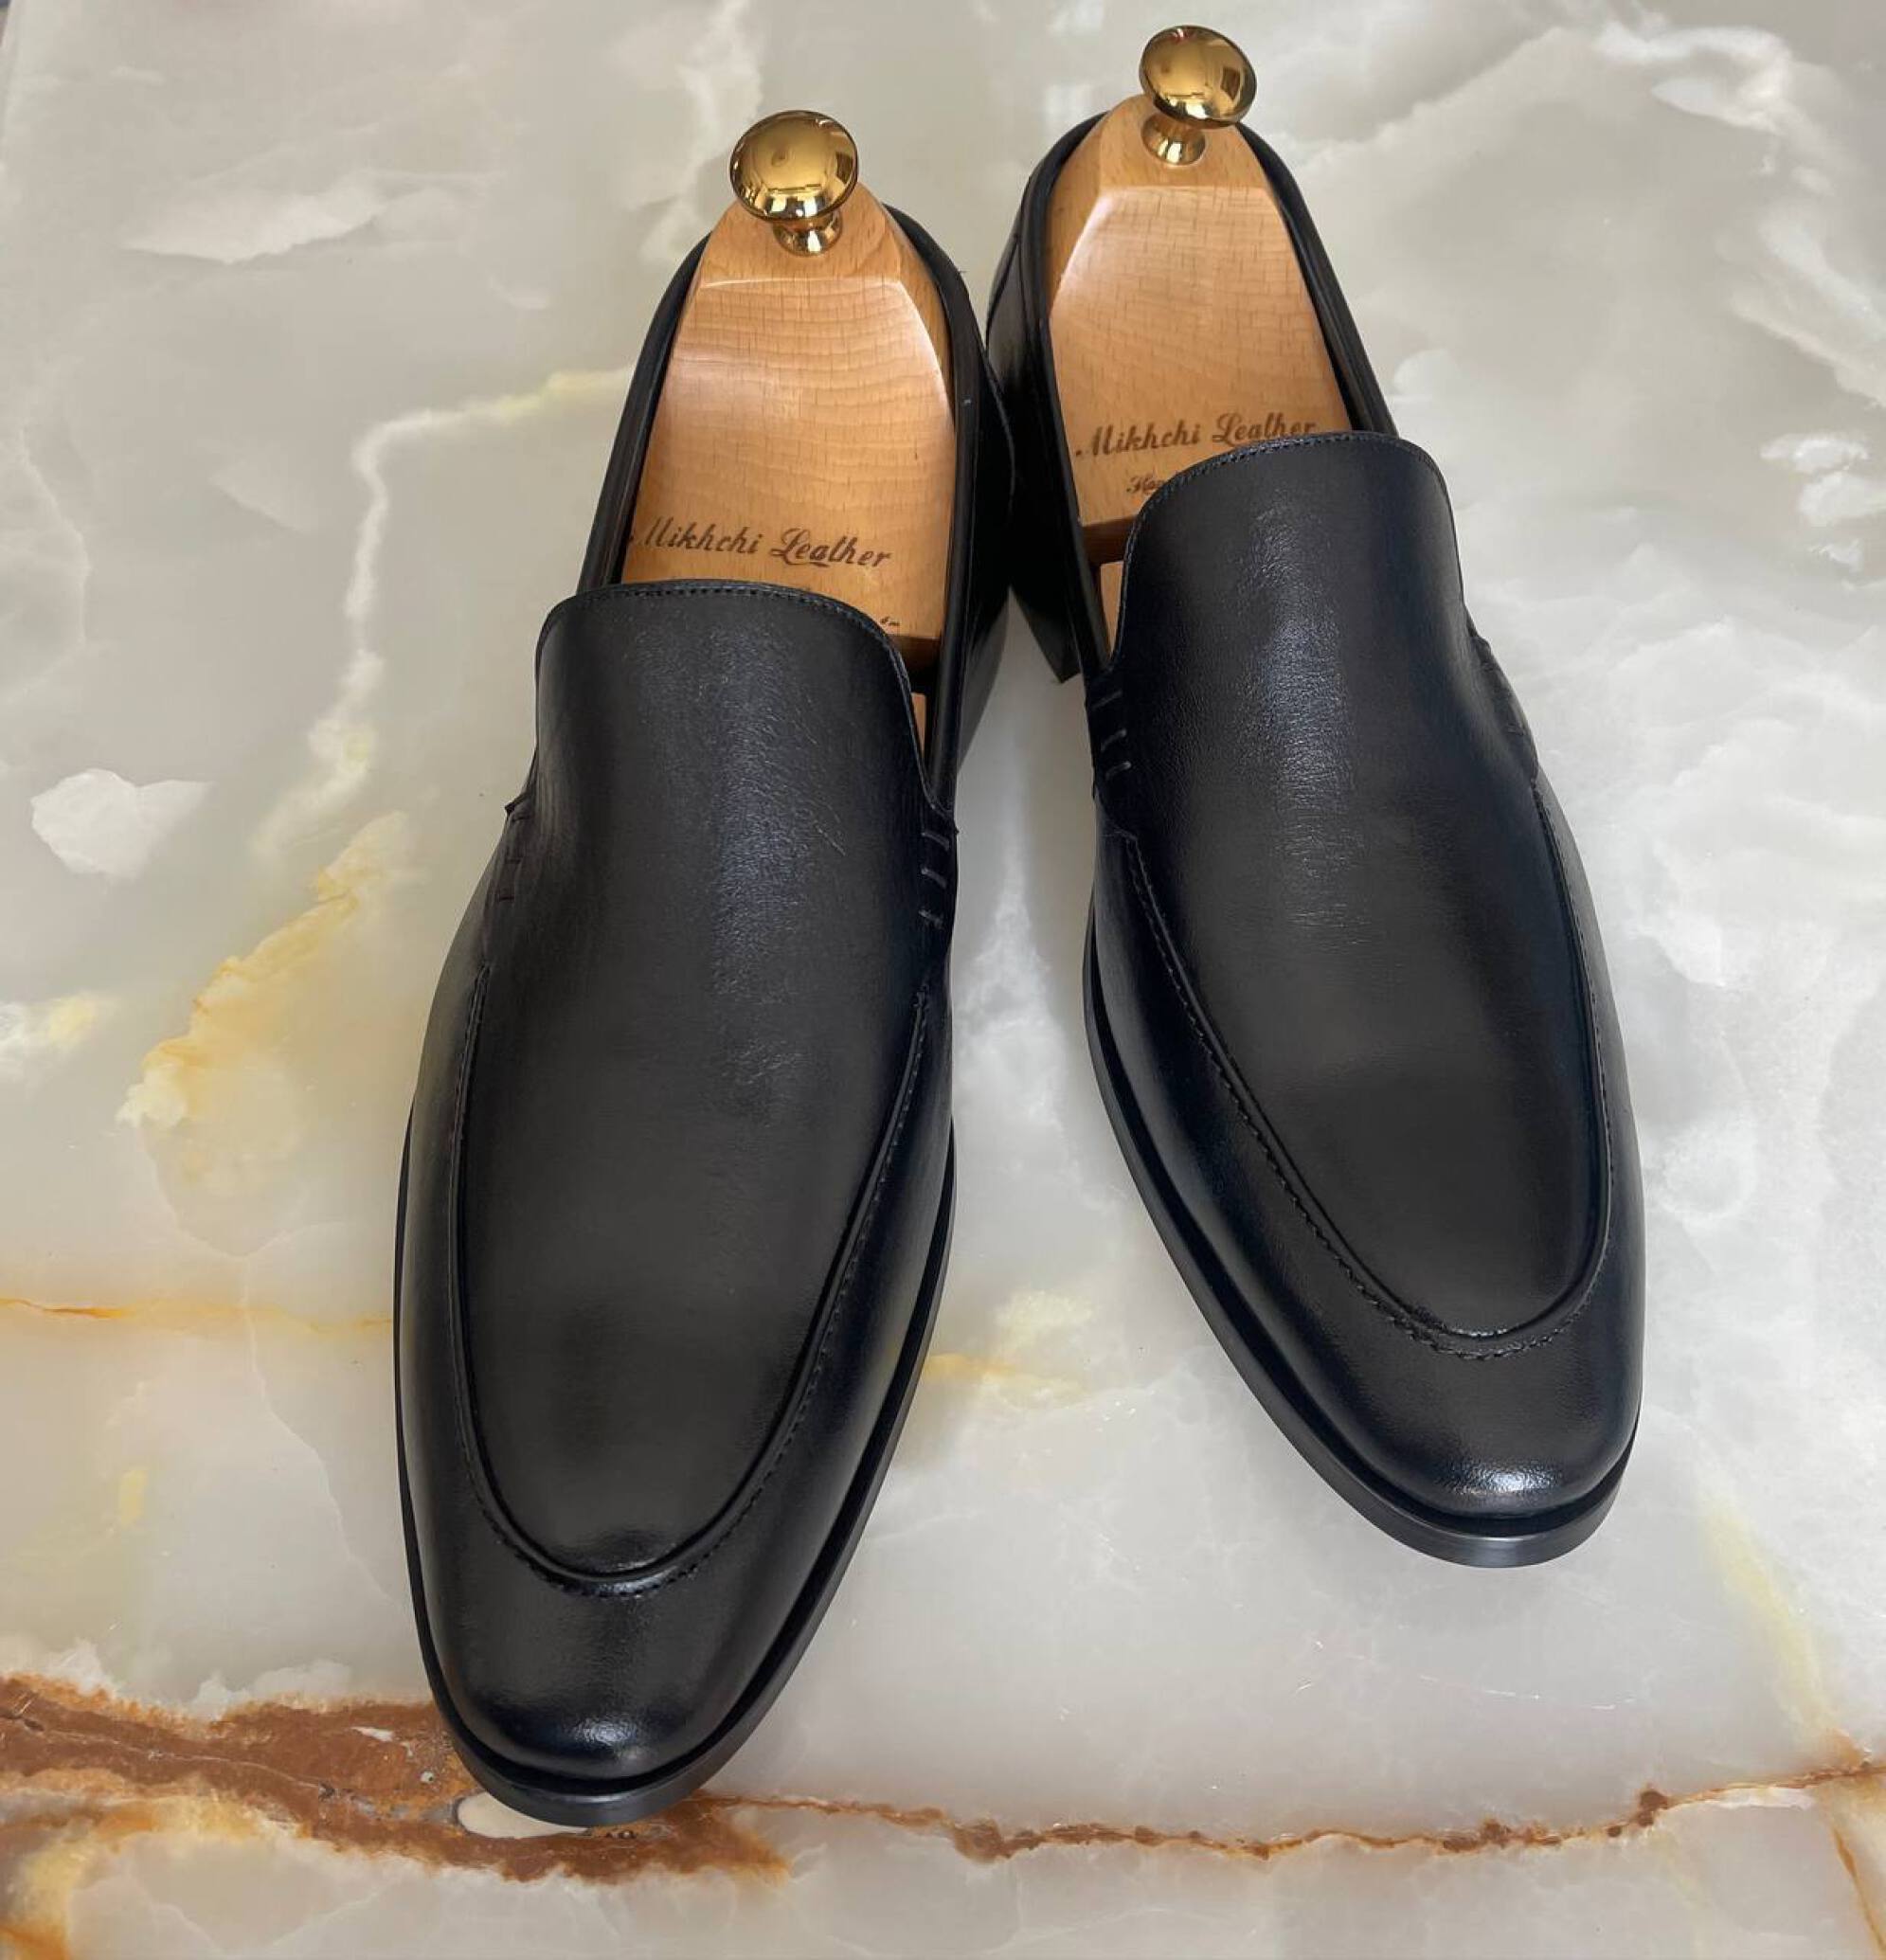  کفش کلاسیک مجلسی چرم مردانه | Vip | کد:M161 | فروشگاه چرم میخچی | مشکی رنگ |‌جنس کفی داخلی از چرم طبیعی دست دوز ایتالیای 